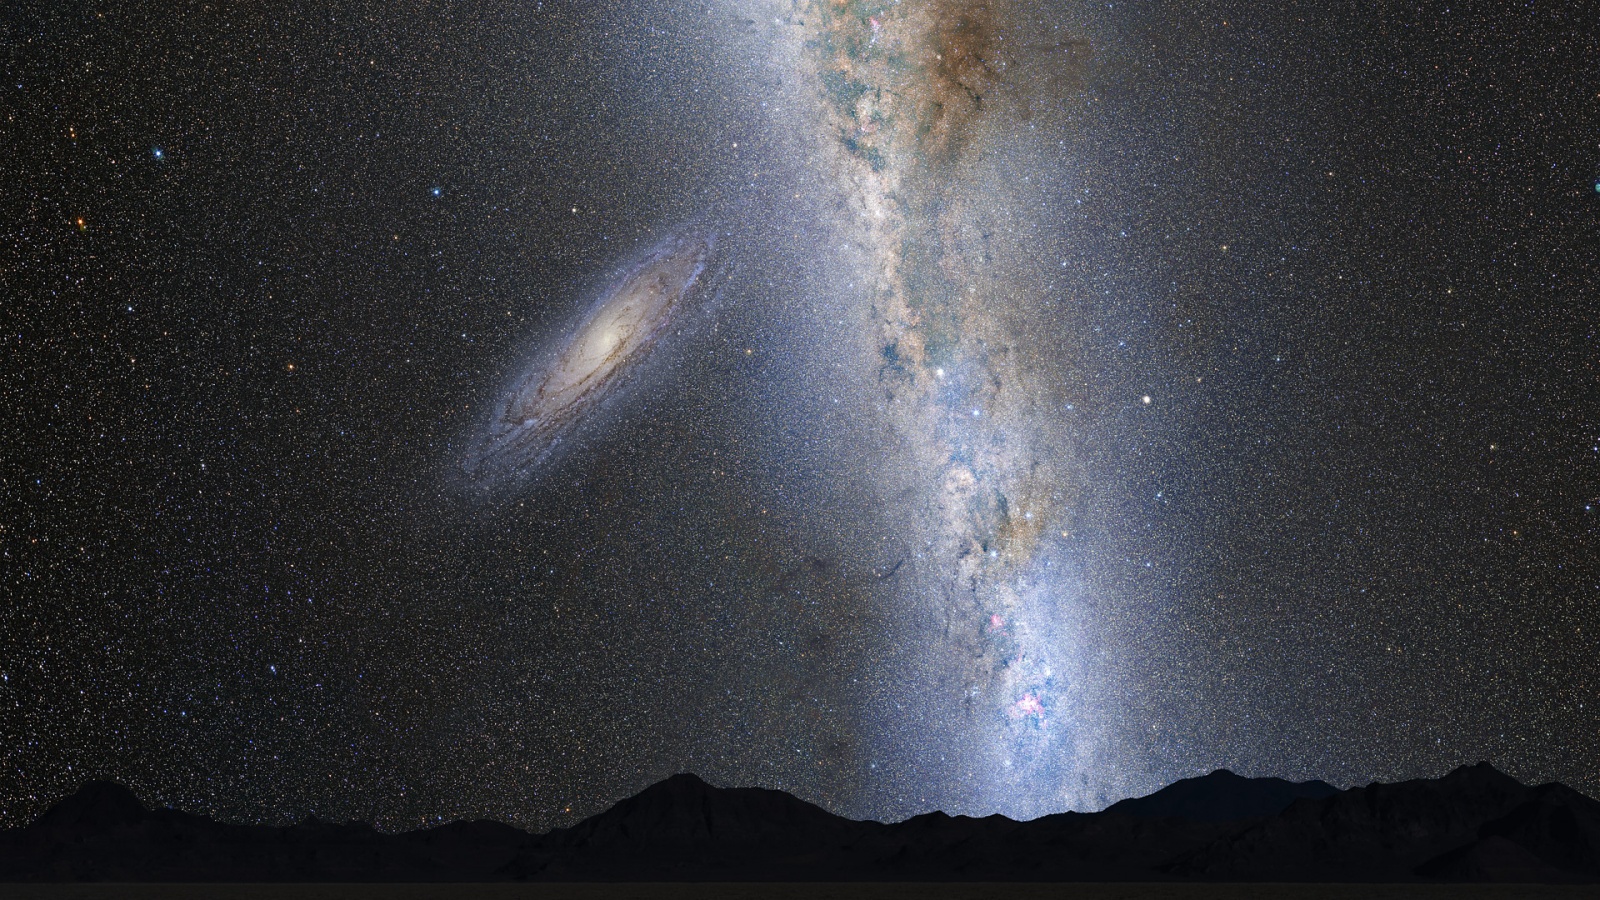 Галактики Андромеды в небе одной из обитаемых планет Млечного пути через пару миллиардов лет. Рисунок художника  